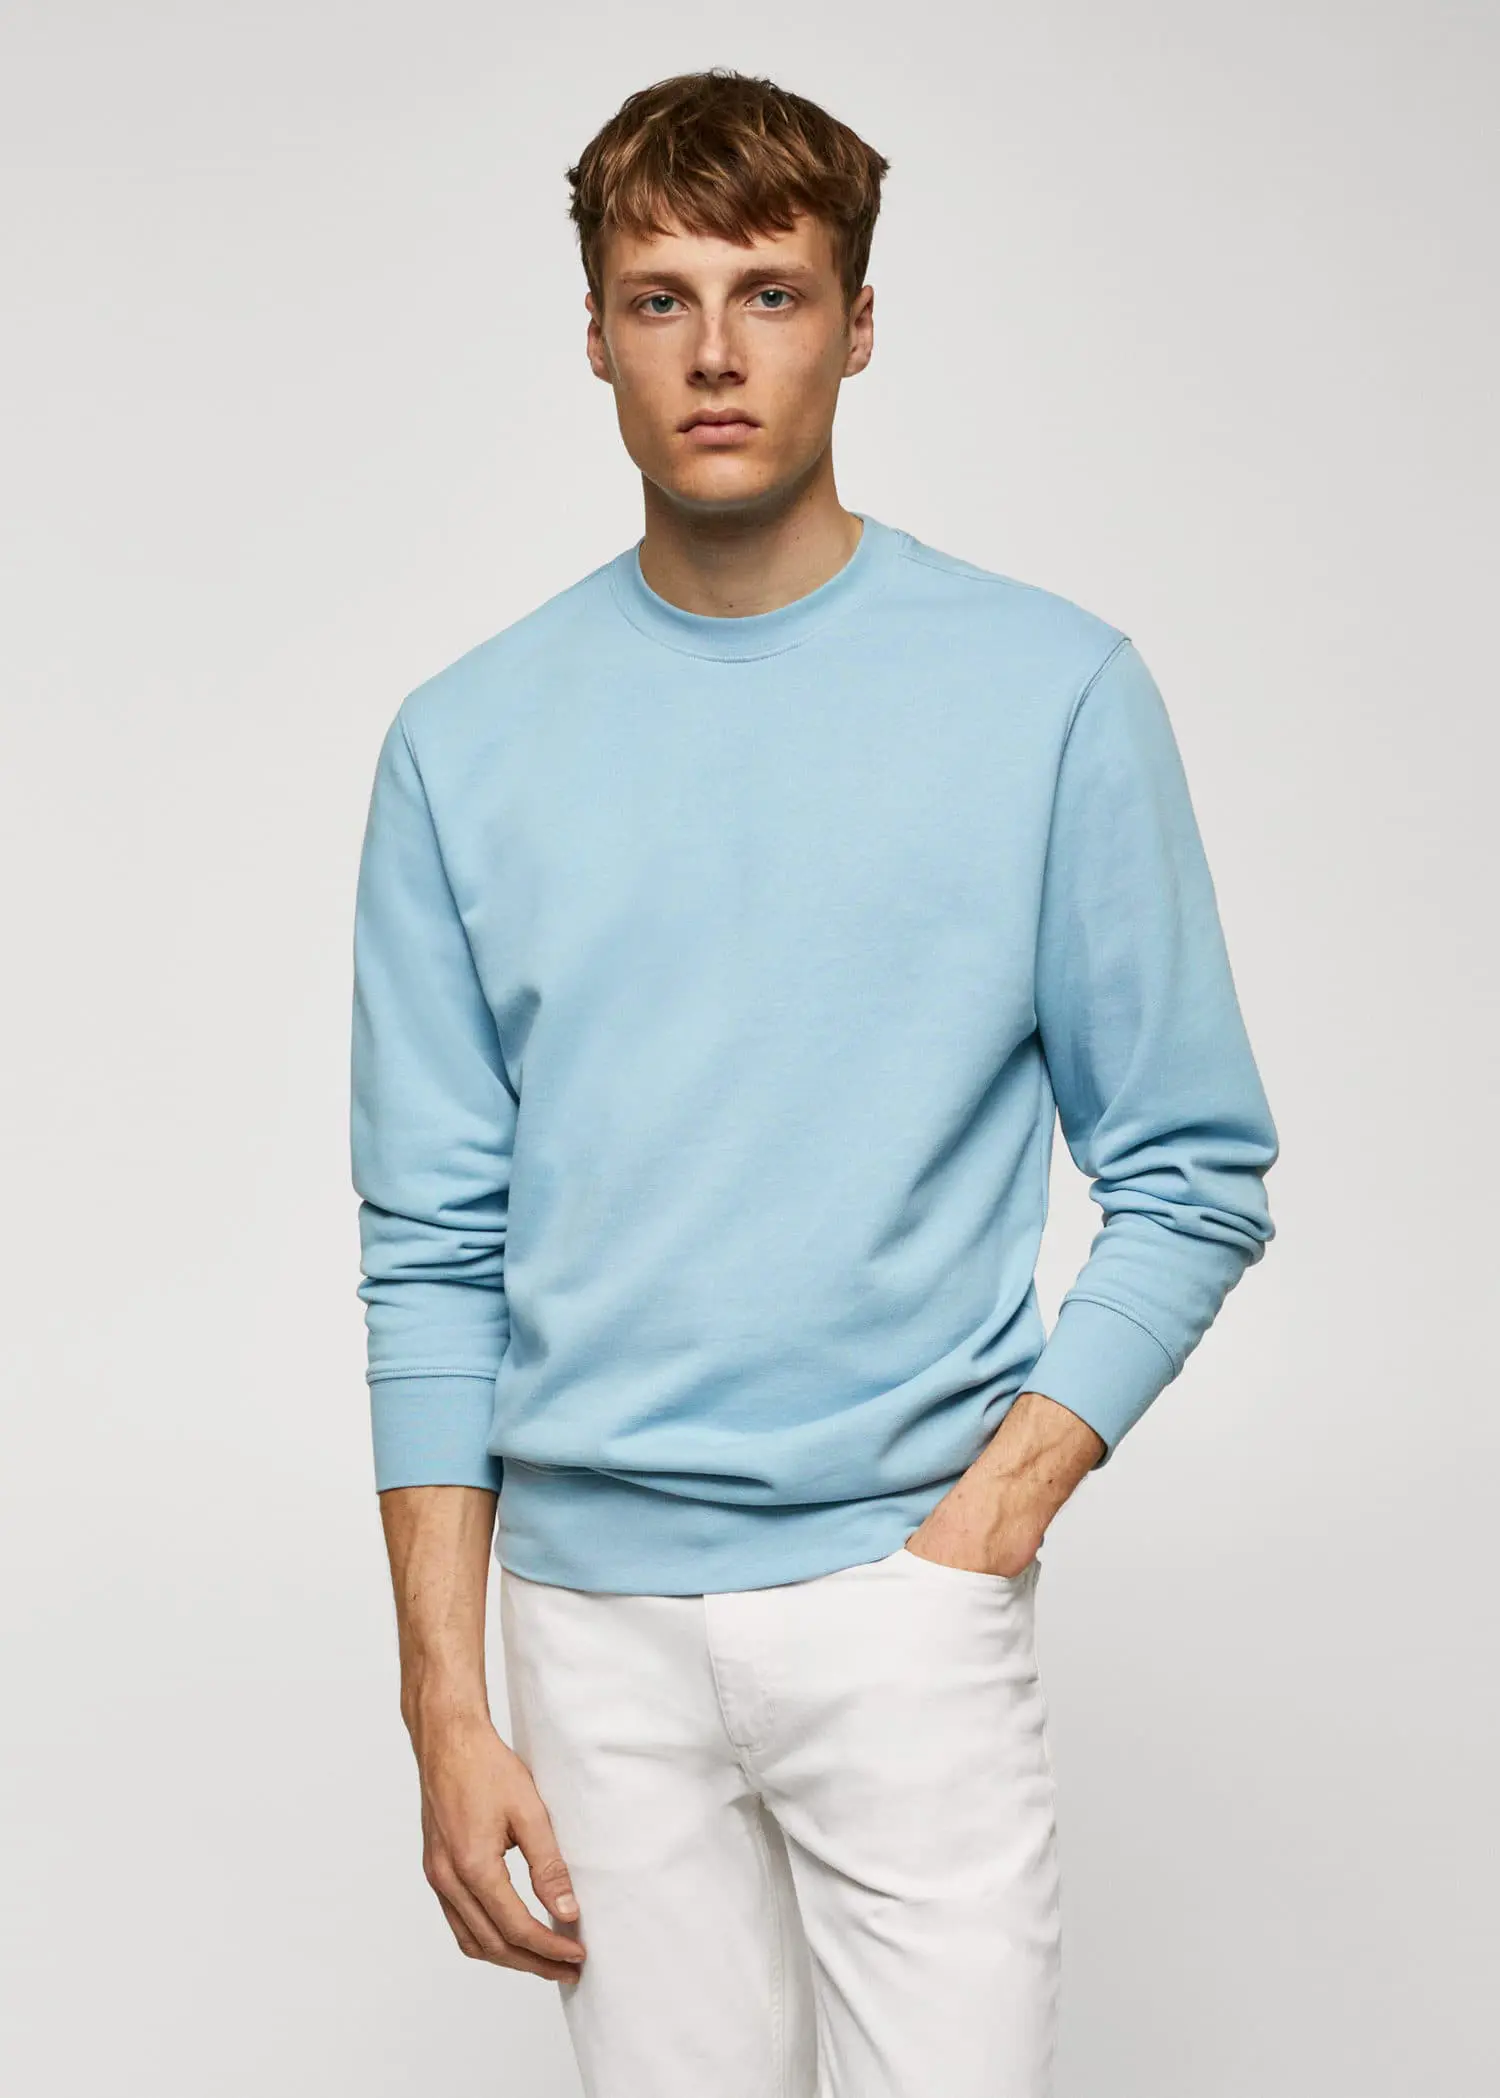 Mango 100% cotton basic sweatshirt . a man wearing a light blue sweatshirt and white pants. 